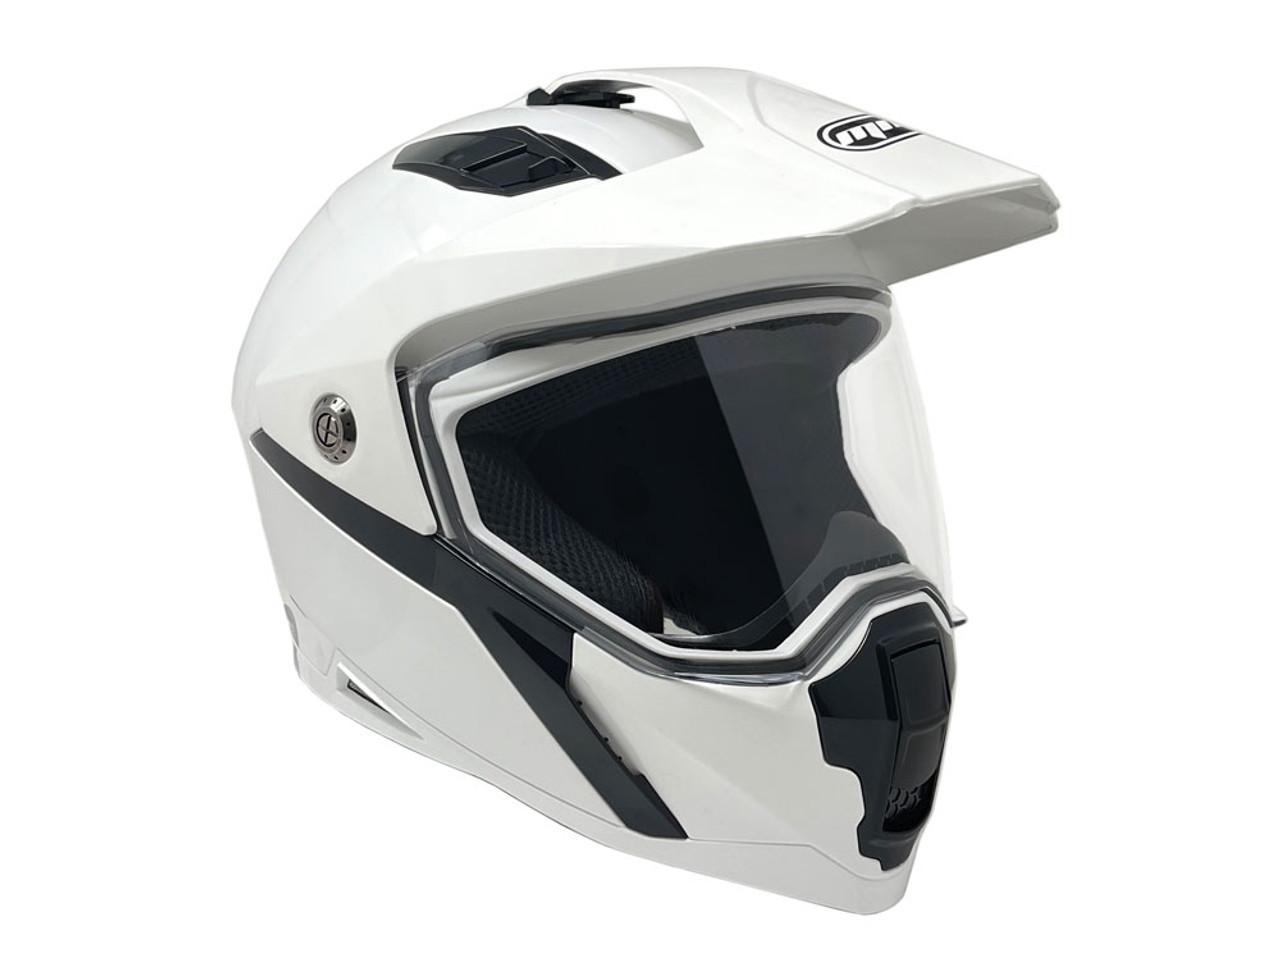 Full Face MMG Helmet. Model Storm -  DOT Approved